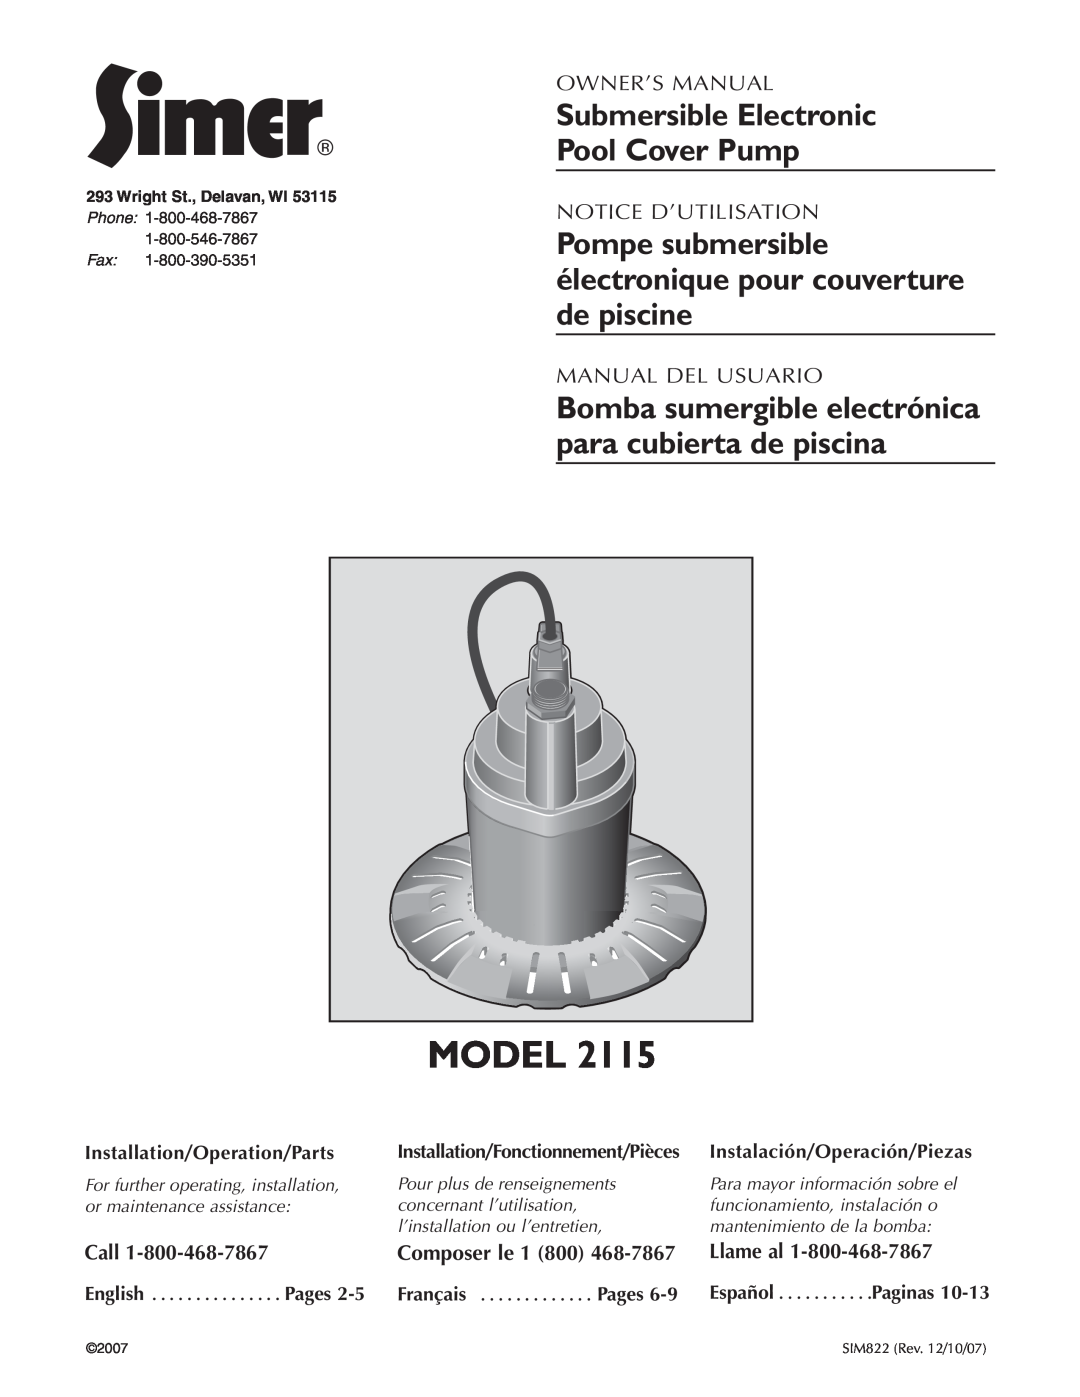 Simer Pumps 2115 owner manual Pompe submersible électronique pour couverture de piscine, Call, Composer le 1 800, Llame al 